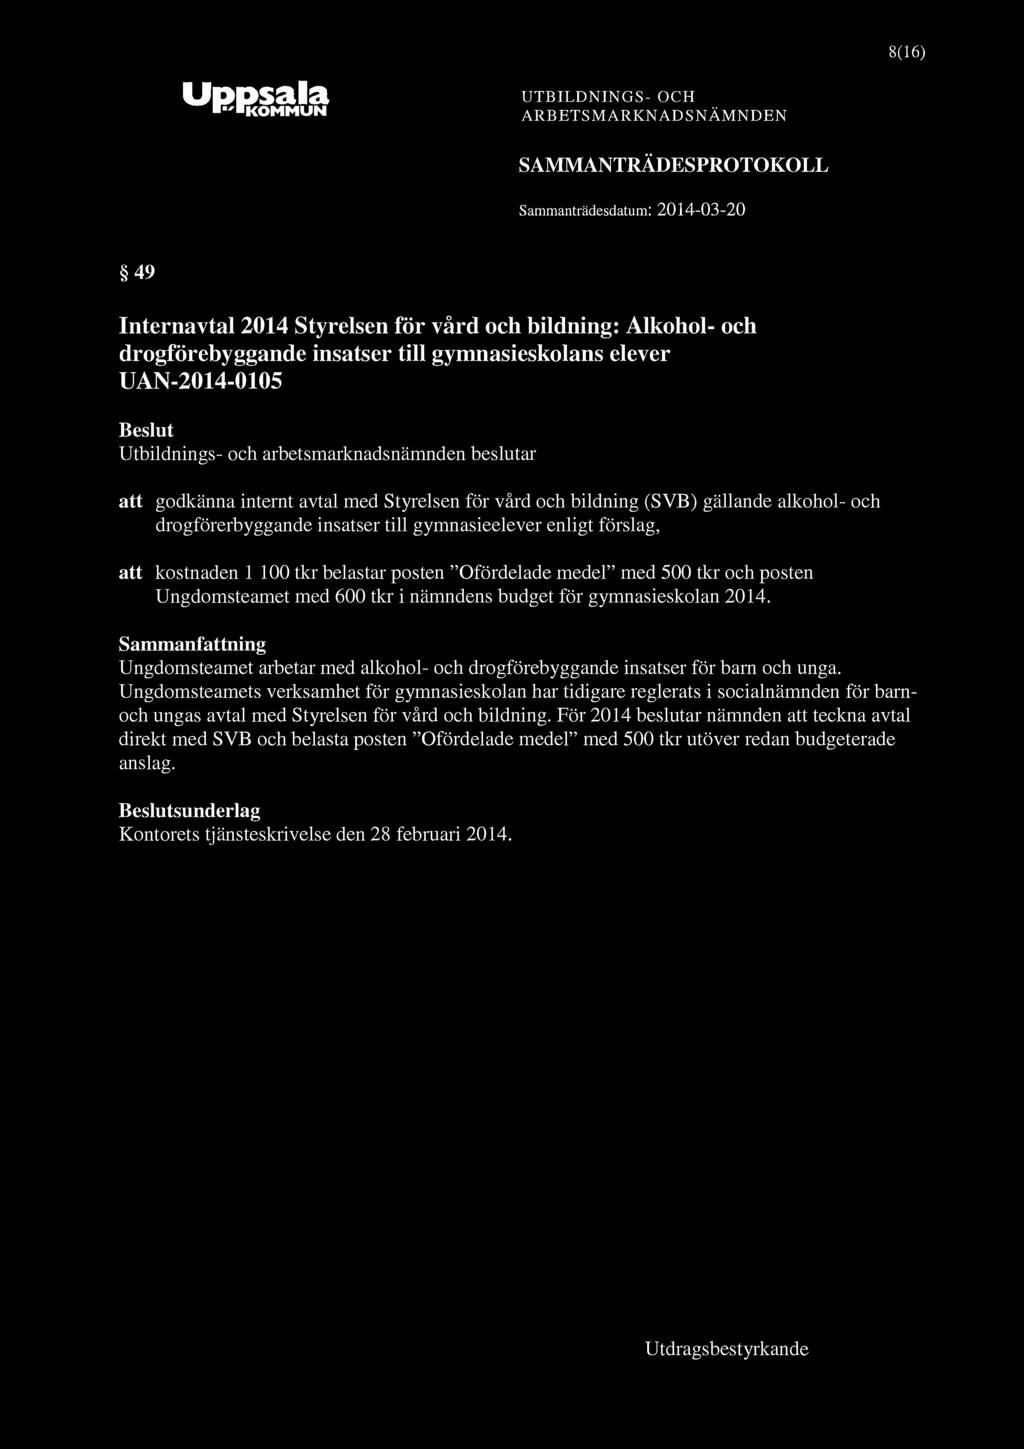 ^ KOMMUN 8(16) 49 Internavtal 2014 Styrelsen för vård och bildning: Alkohol- och drogförebyggande insatser till gymnasieskolans elever UAN-2014-0105 att godkänna internt avtal med Styrelsen för vård